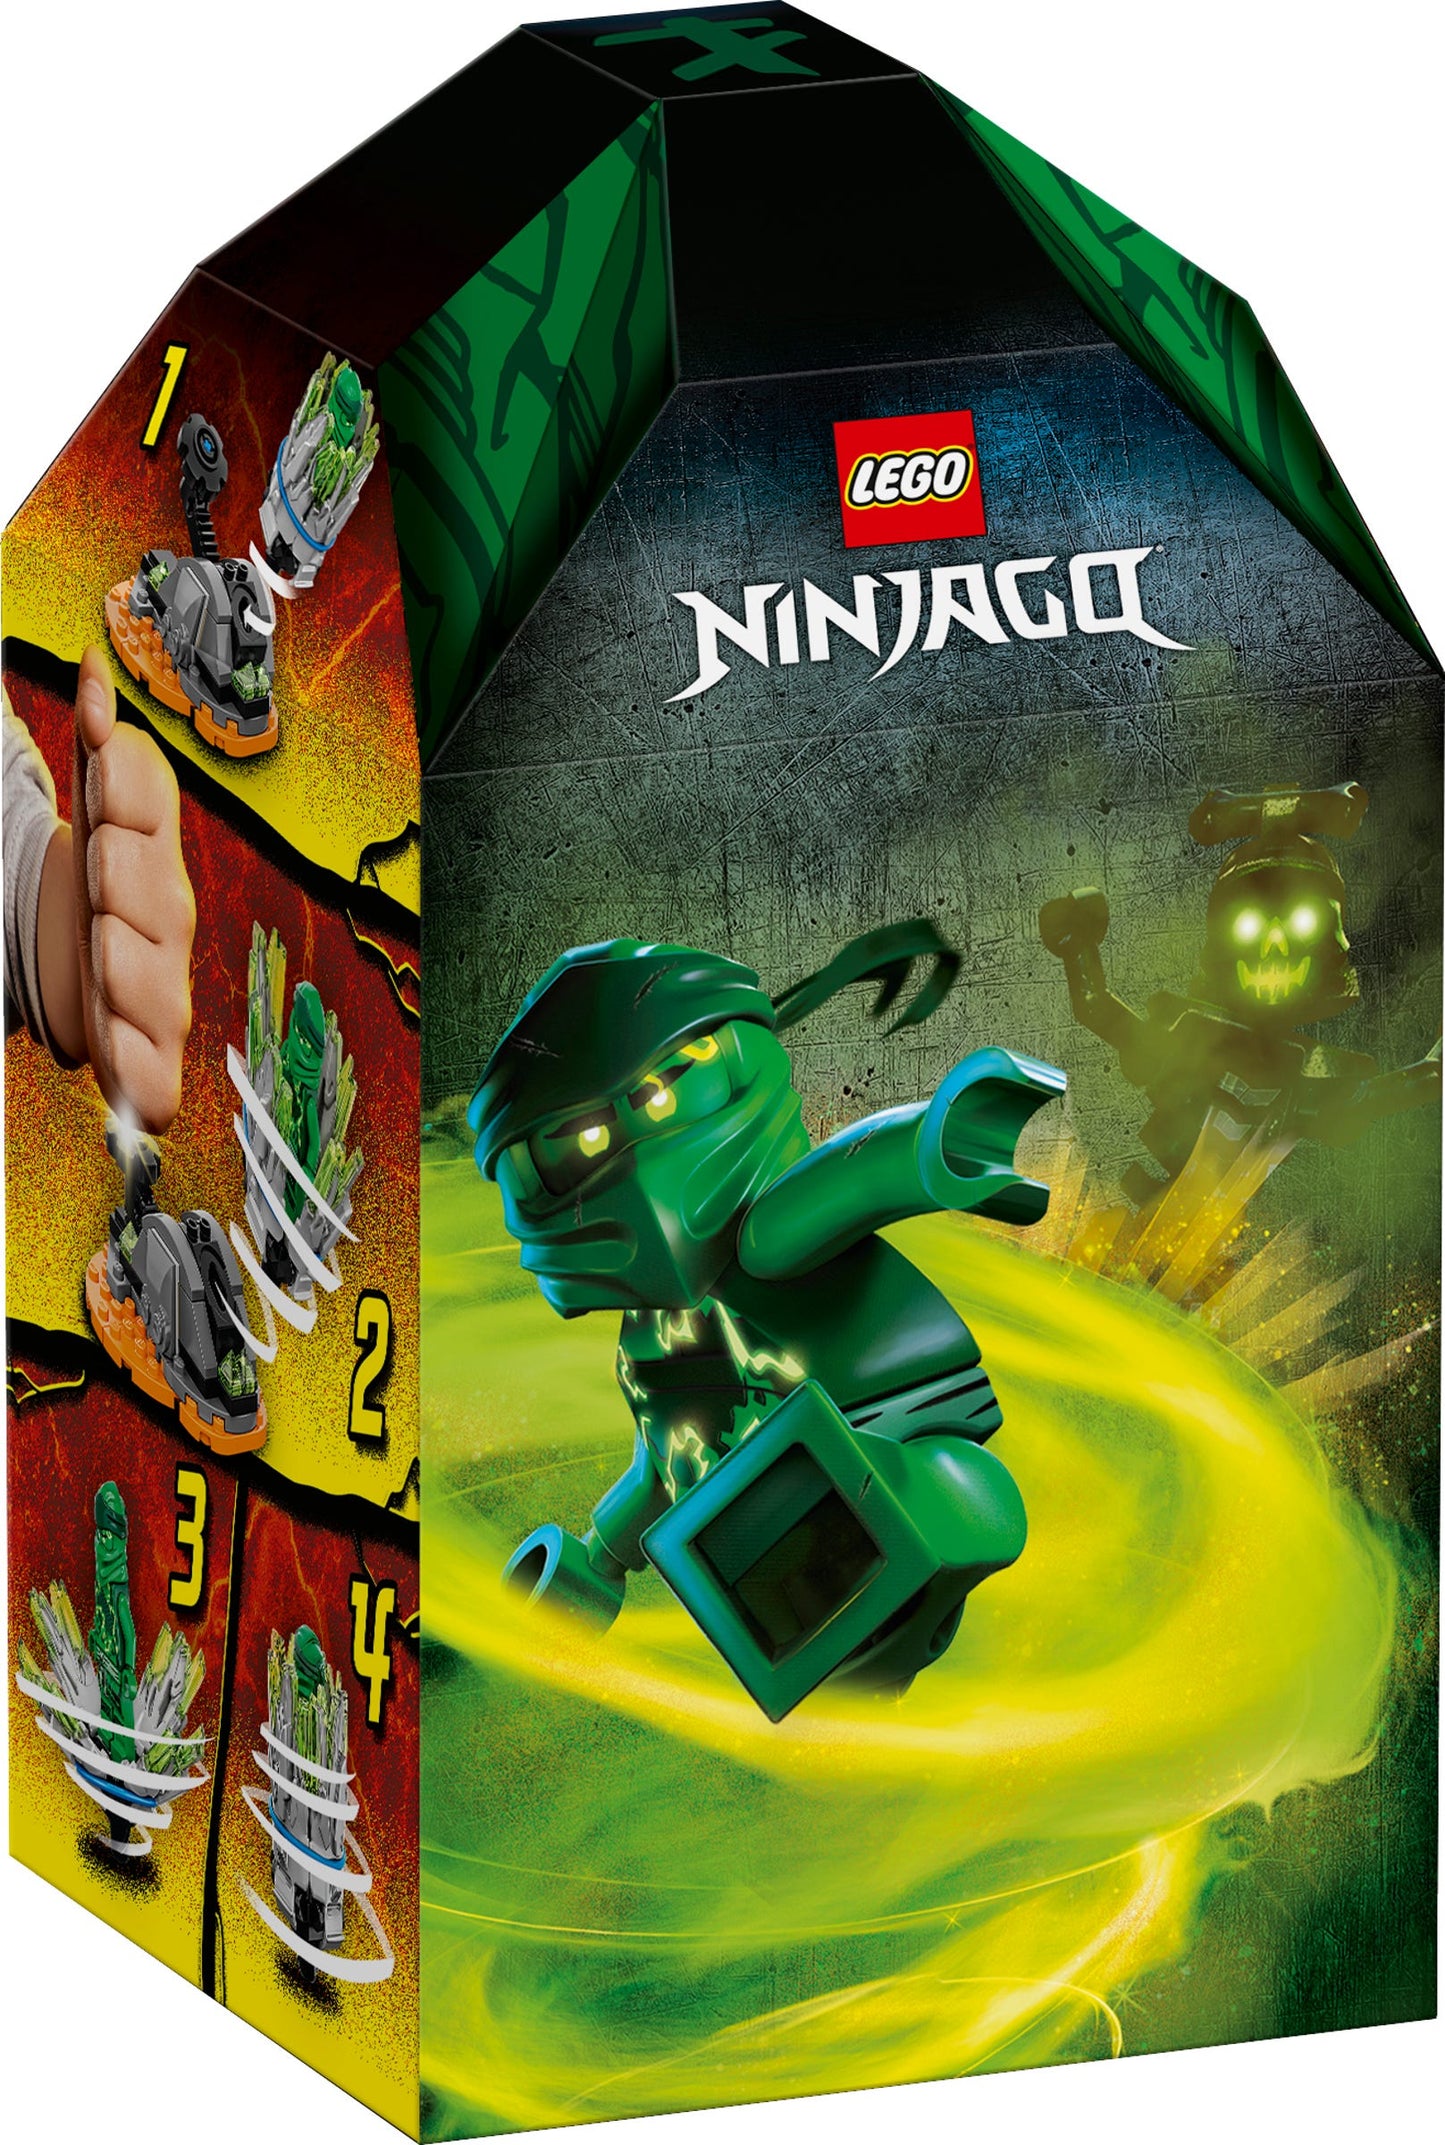 Lego Ninjago Spinjitzu Burst Lloyd 70687